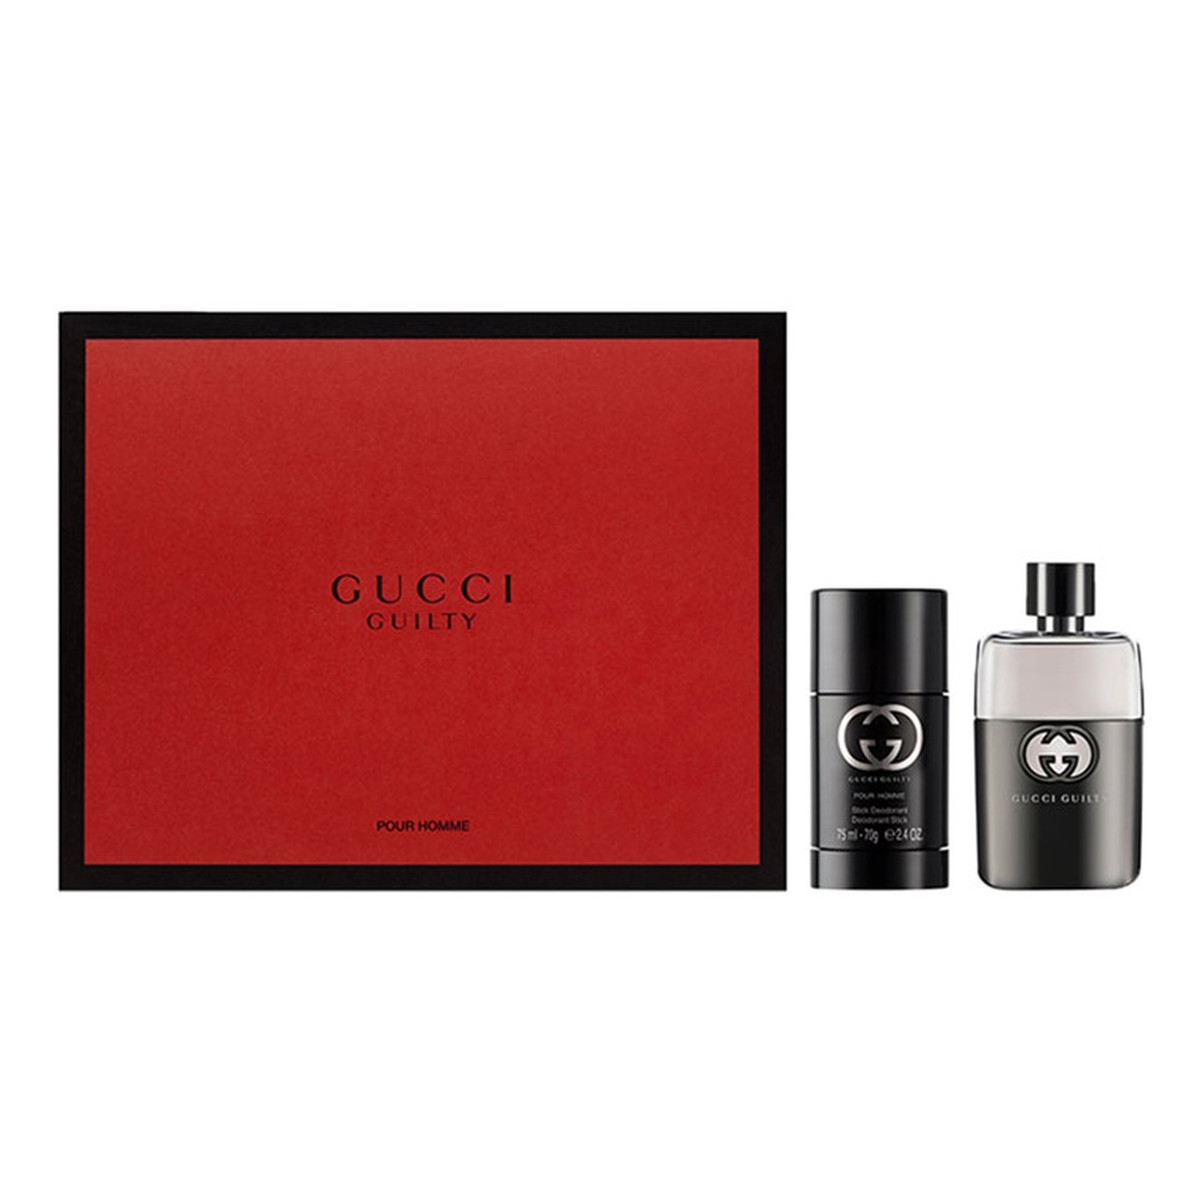 Gucci Pour Homme zestaw (woda toaletowa 50ml + dezodorant sztyft 75g)